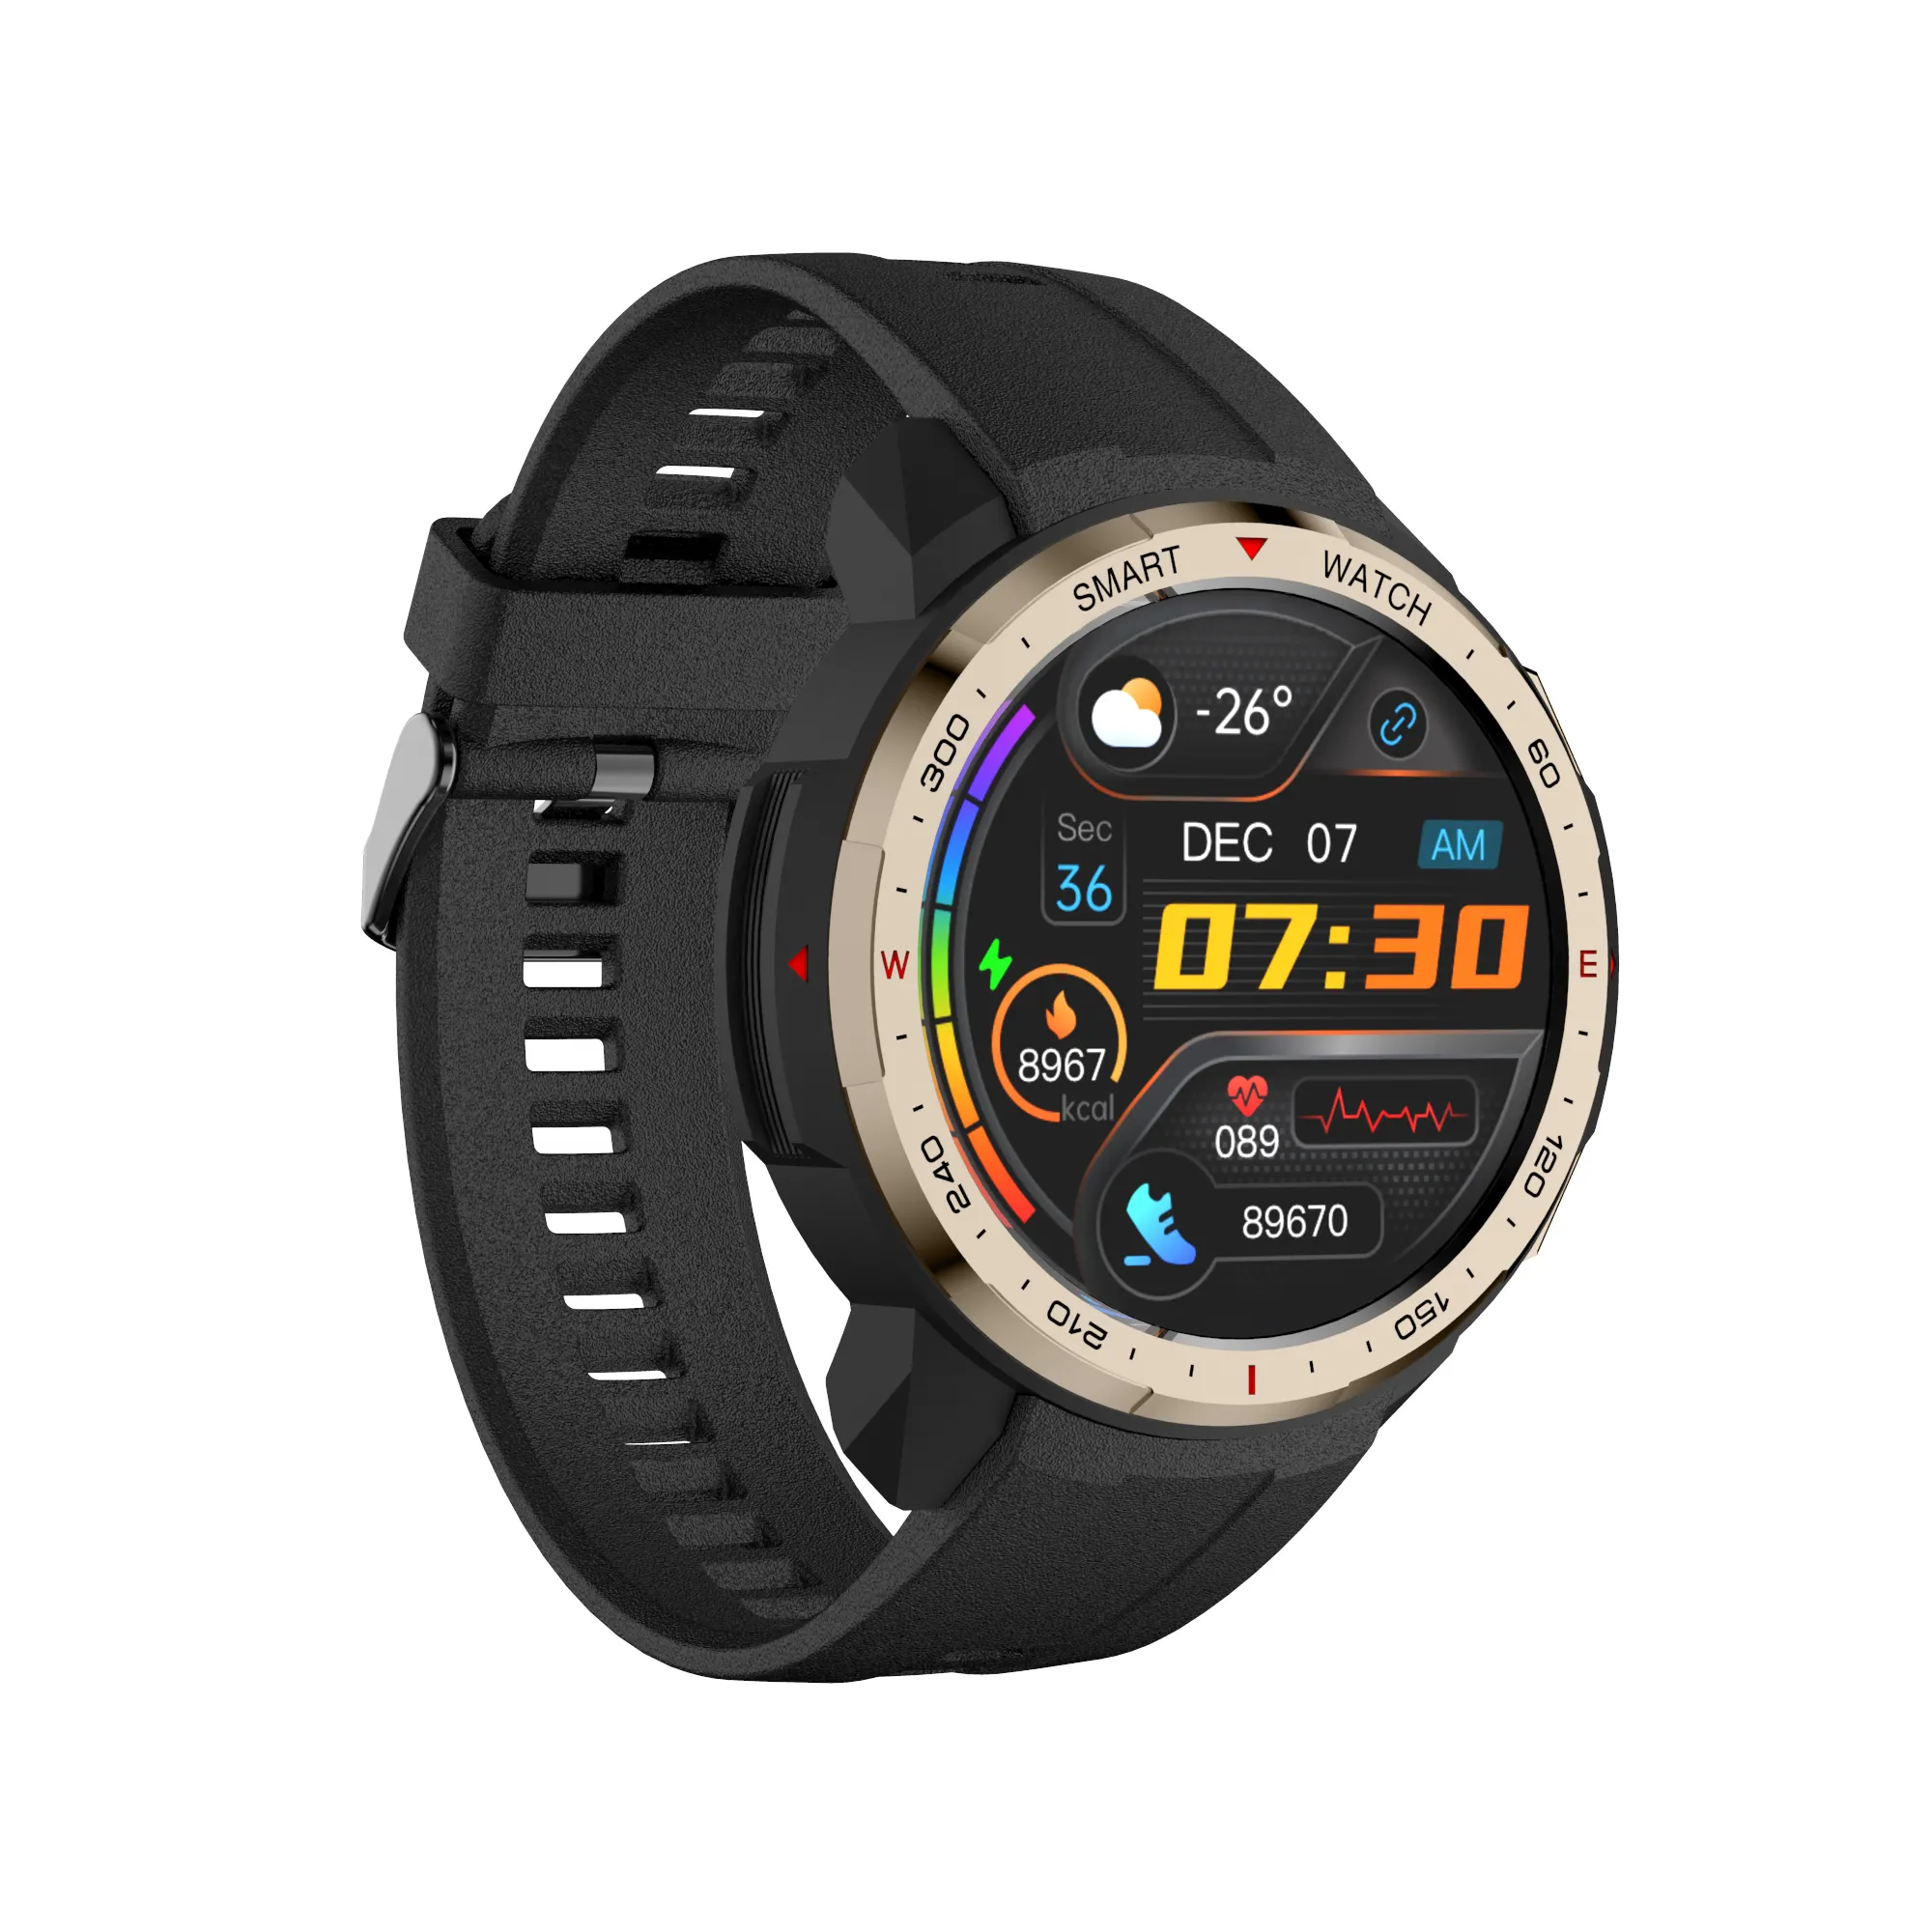 2022 الرياضة ساعة ذكية MT12 جهاز تعقب للياقة البدنية سوار ذكي الموسيقى لاعب تسجيل 8GB ROM ساعة ذكية لهاتف آيفون xiaomi